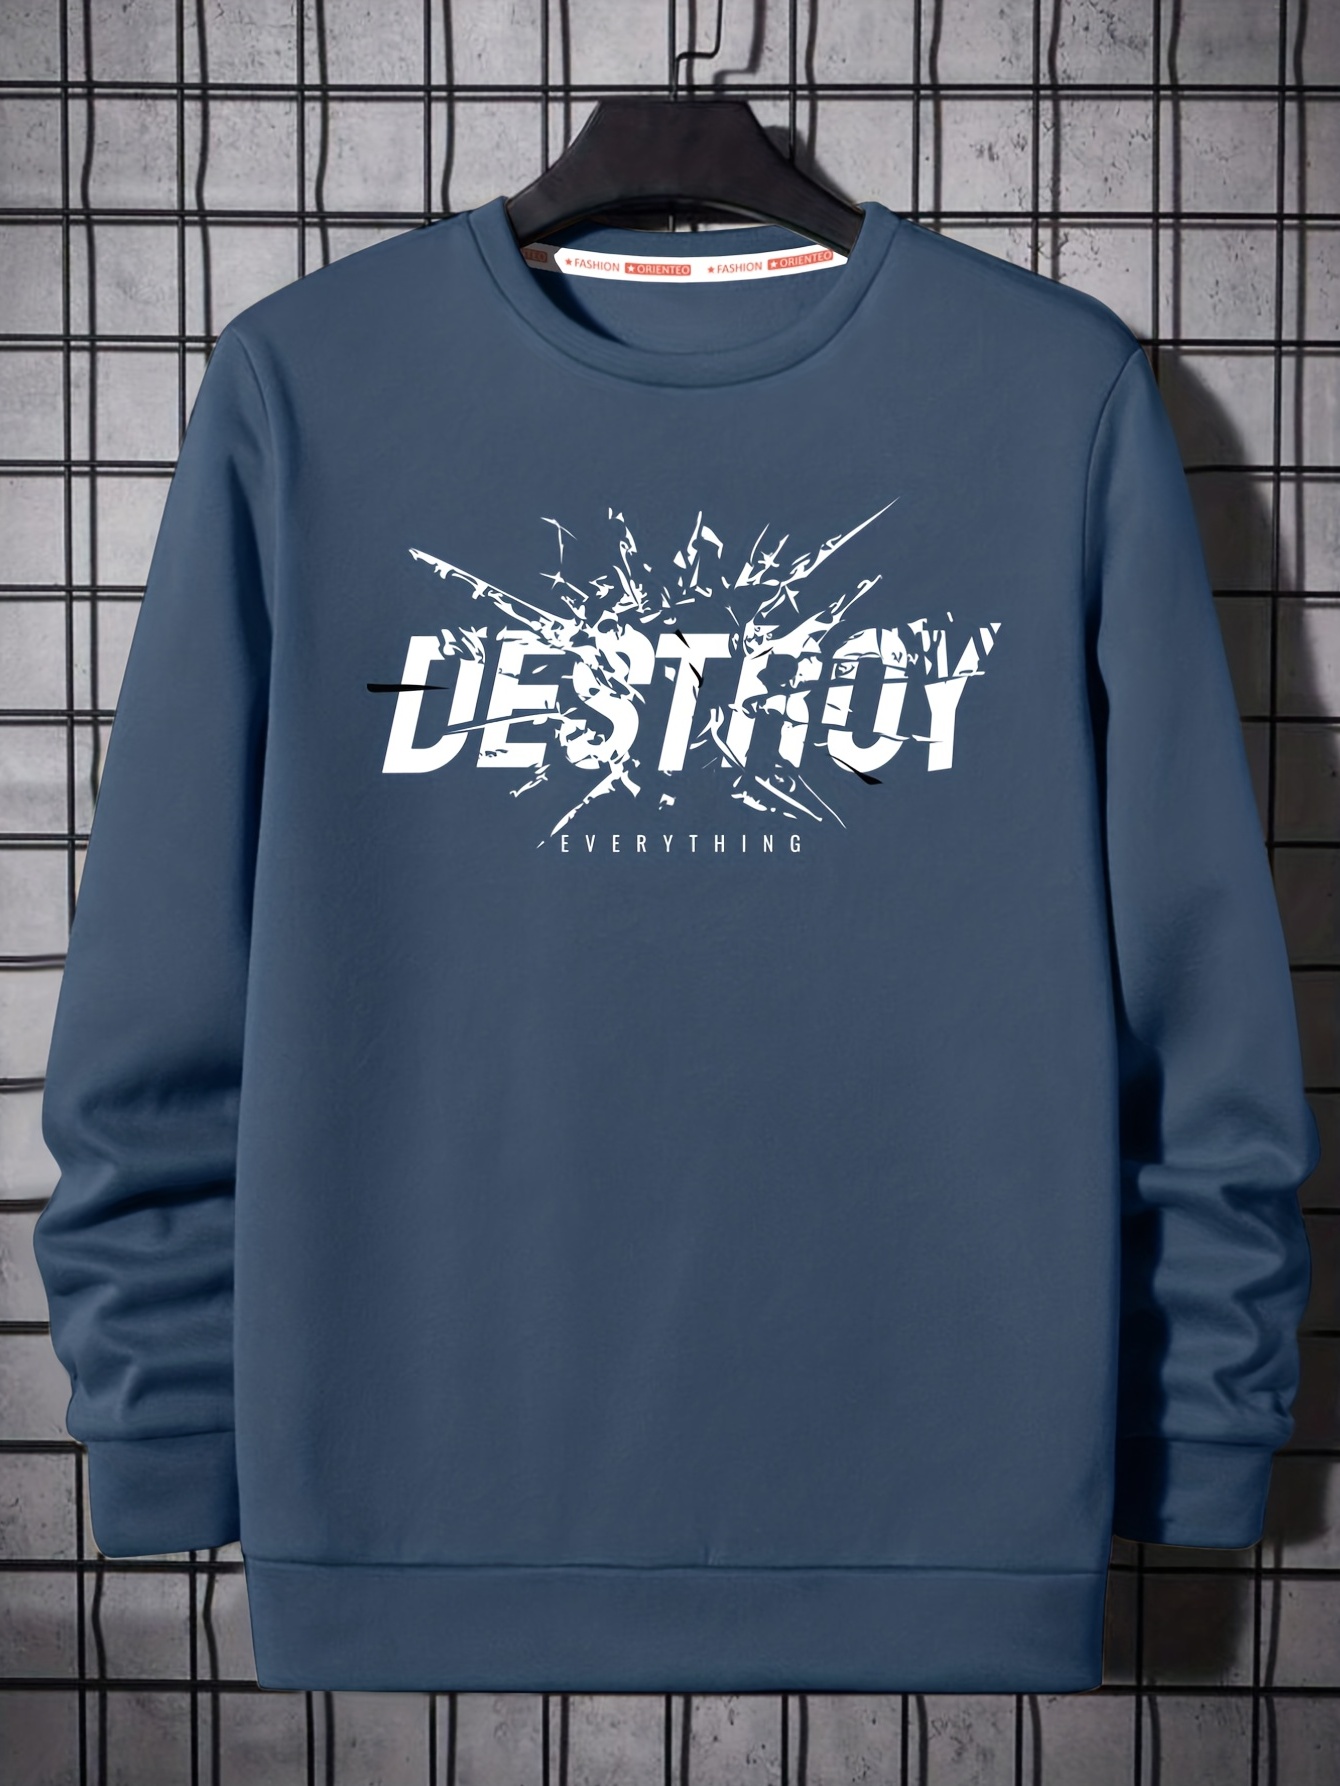 Destroy Print Trendy Sweatshirt, Men's Casual Graphic Design